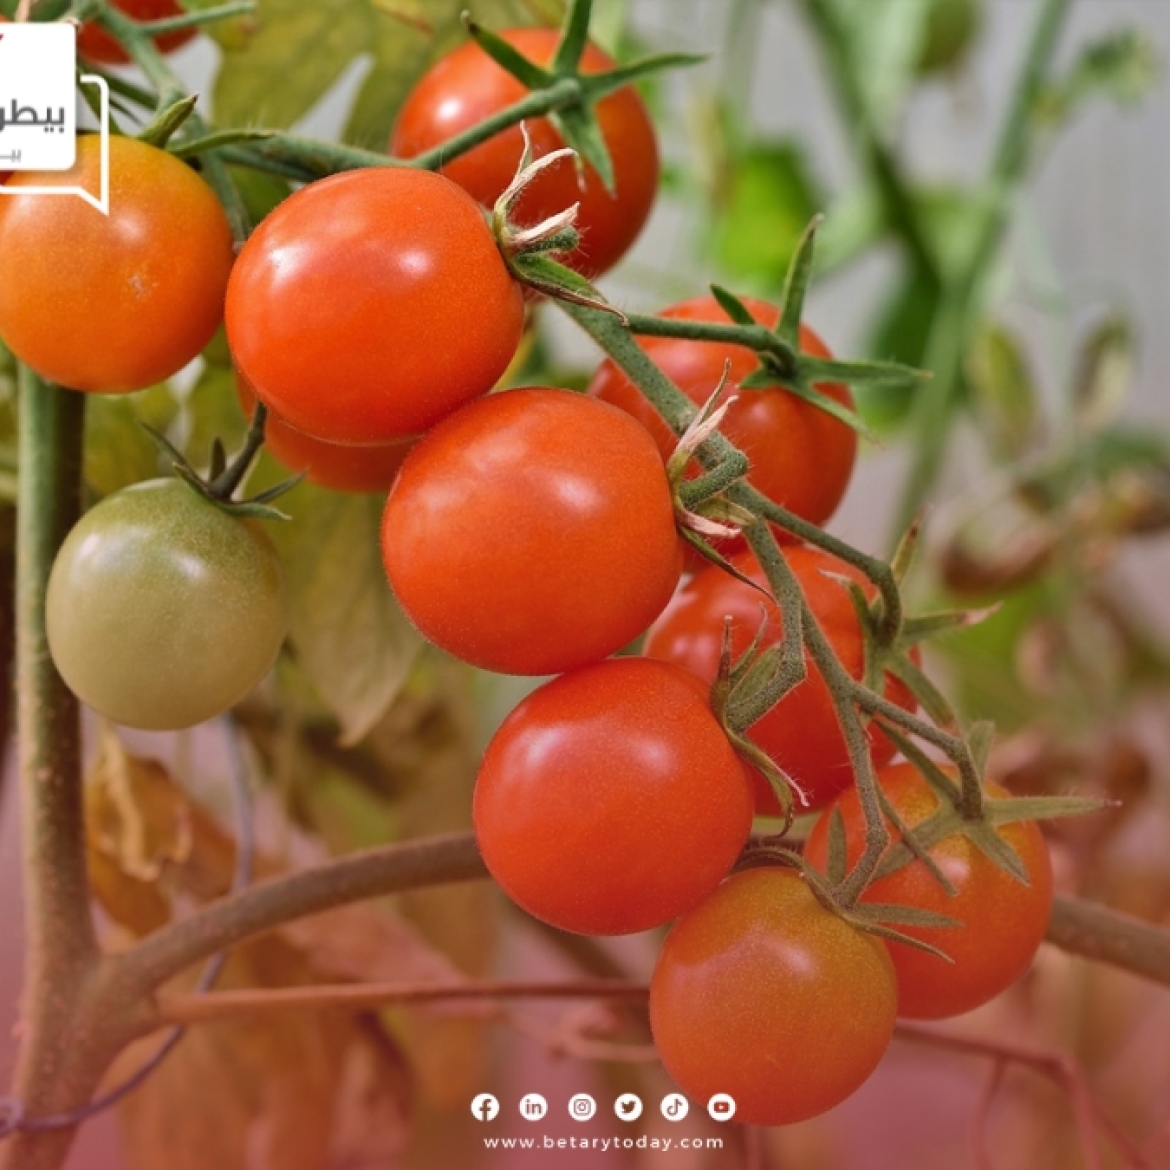 زراعة الطماطم دليل شامل للنجاح في الزراعة المنزلية